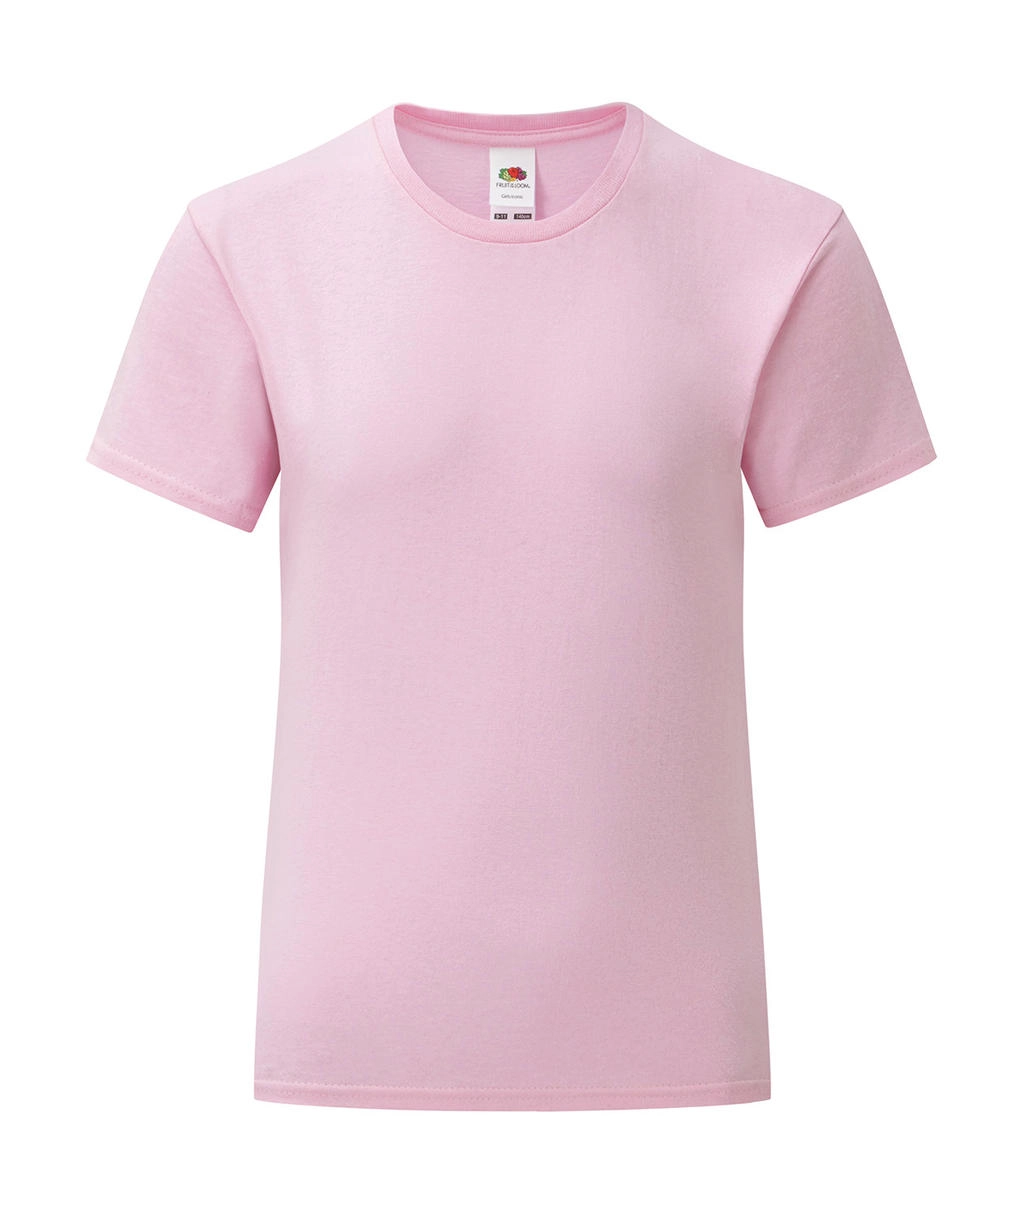 Girls` Iconic 150 T zum Besticken und Bedrucken in der Farbe Light Pink mit Ihren Logo, Schriftzug oder Motiv.